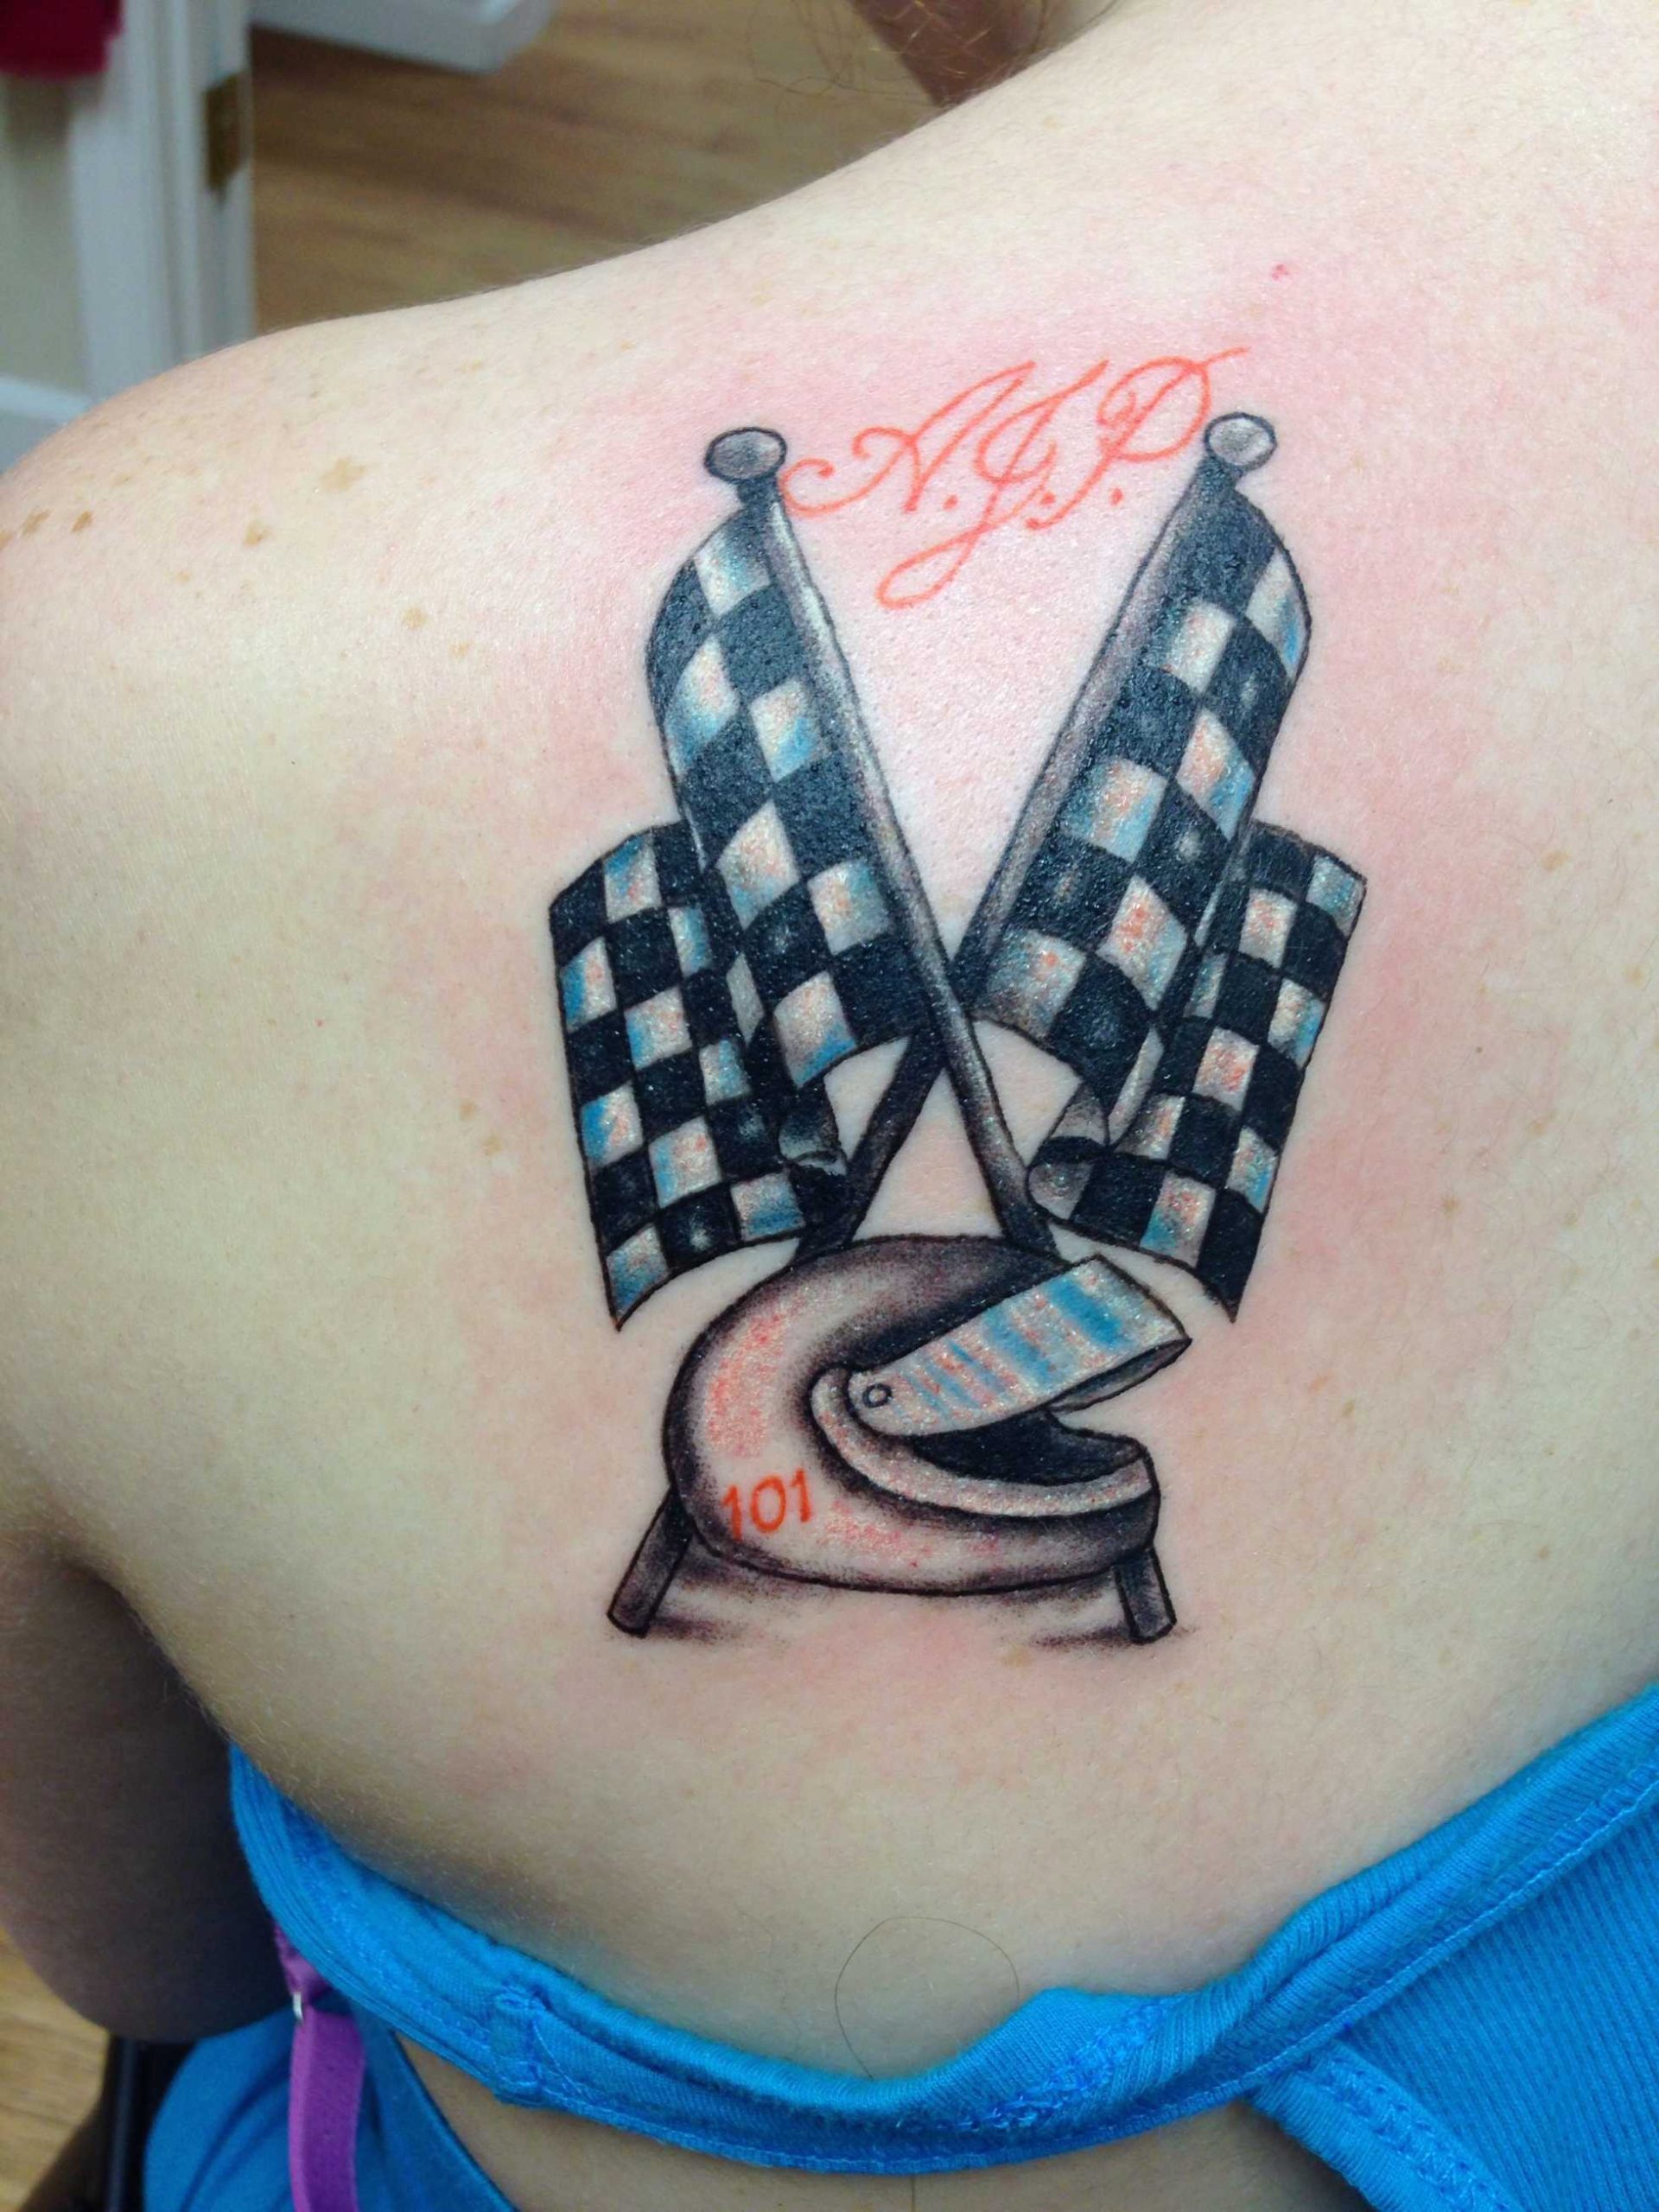 Racing tattoo  Tattoo designs, Picture tattoos, Mini tattoos